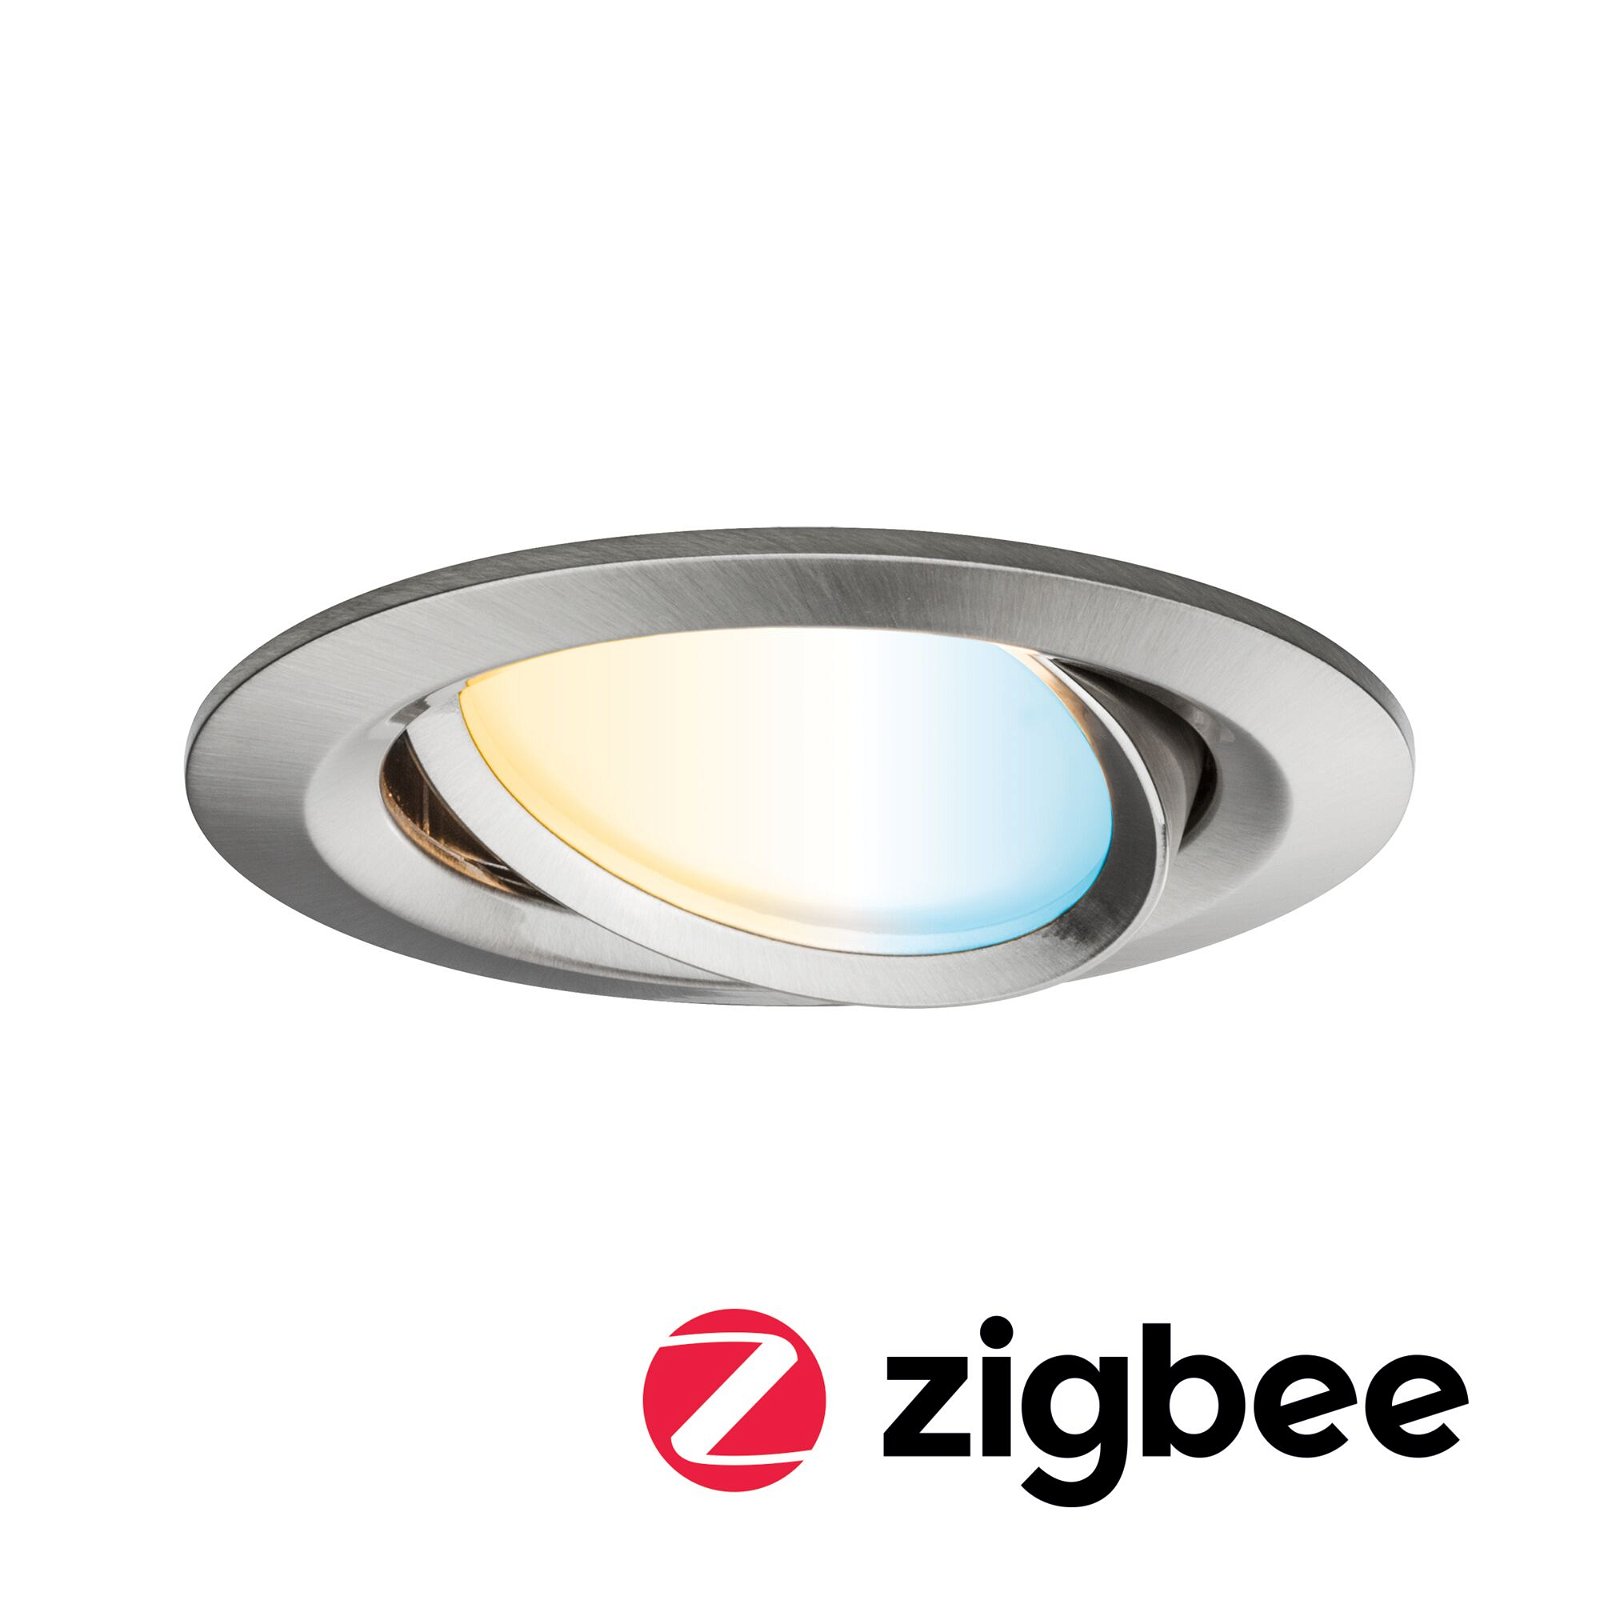 LED Einbauleuchte Smart Home Zigbee Nova Plus Coin schwenkbar rund 84mm 50° Coin 6W 470lm 230V dimmbar Tunable White Eisen gebürstet